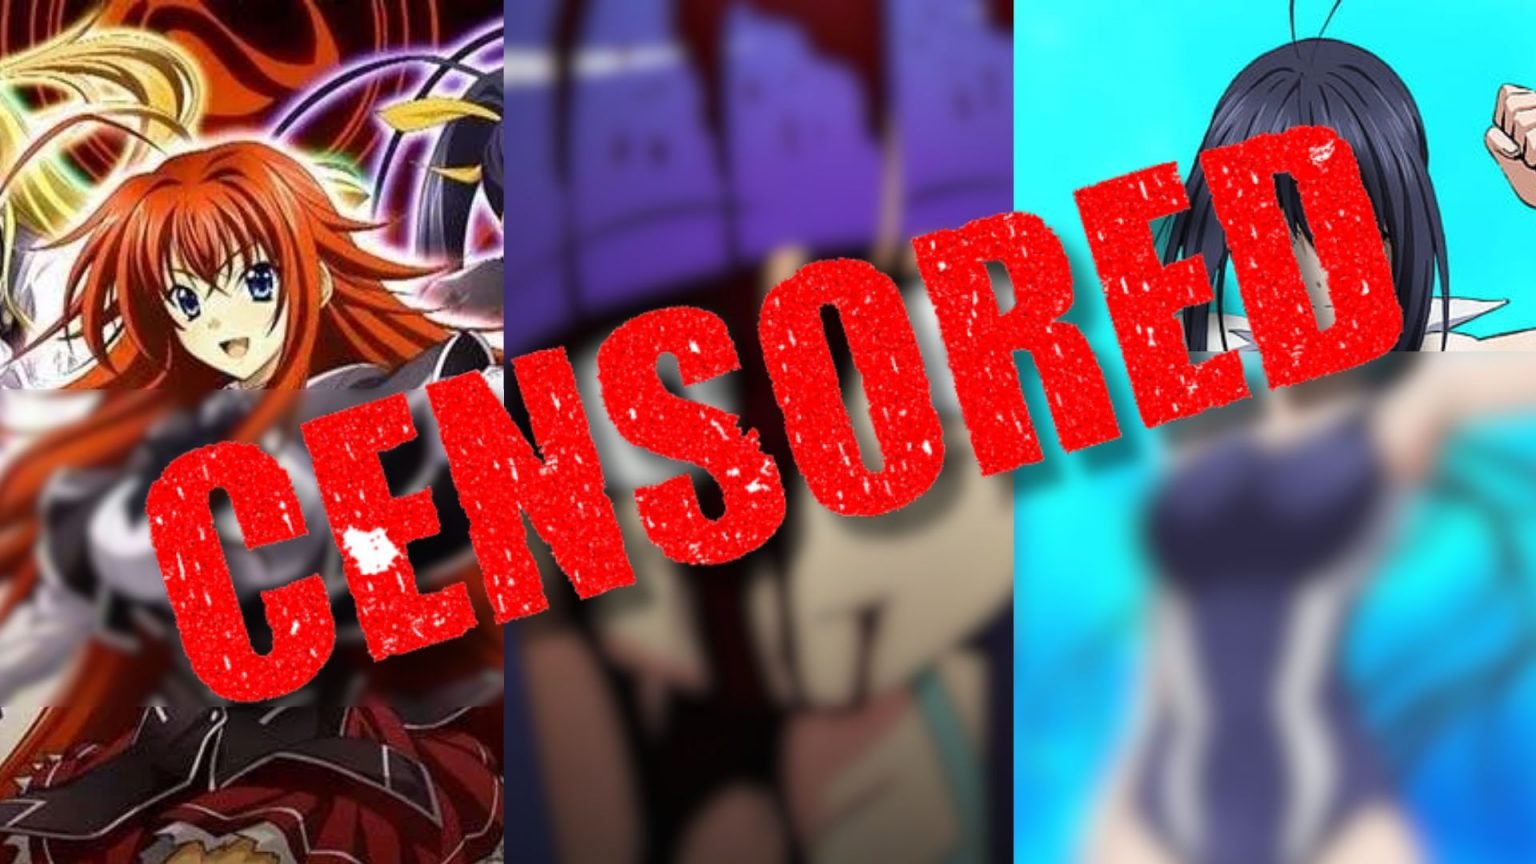 censorship in anime